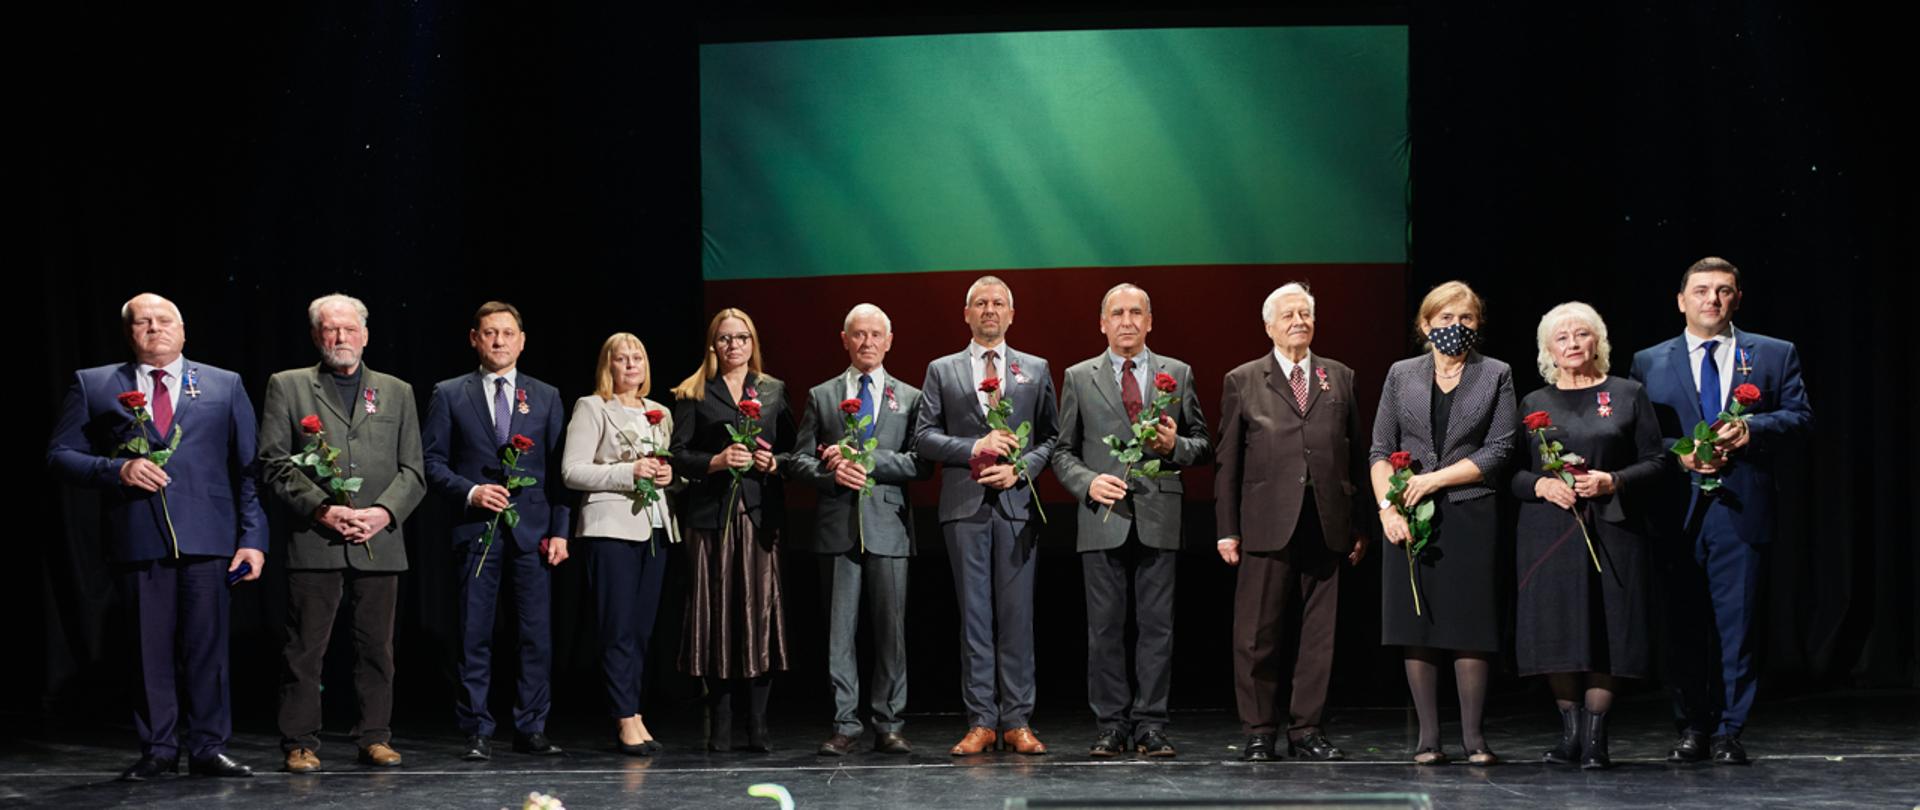 Odznaczenia państwowe nadane przez Prezydenta RP Andrzej Duda obywatelom Litwy zasłużonym dla rozwoju polsko-litewskiej współpracy, zaangażowanym w działalność na rzecz społeczności polskiej na Litwie oraz popularyzującym polską kulturę